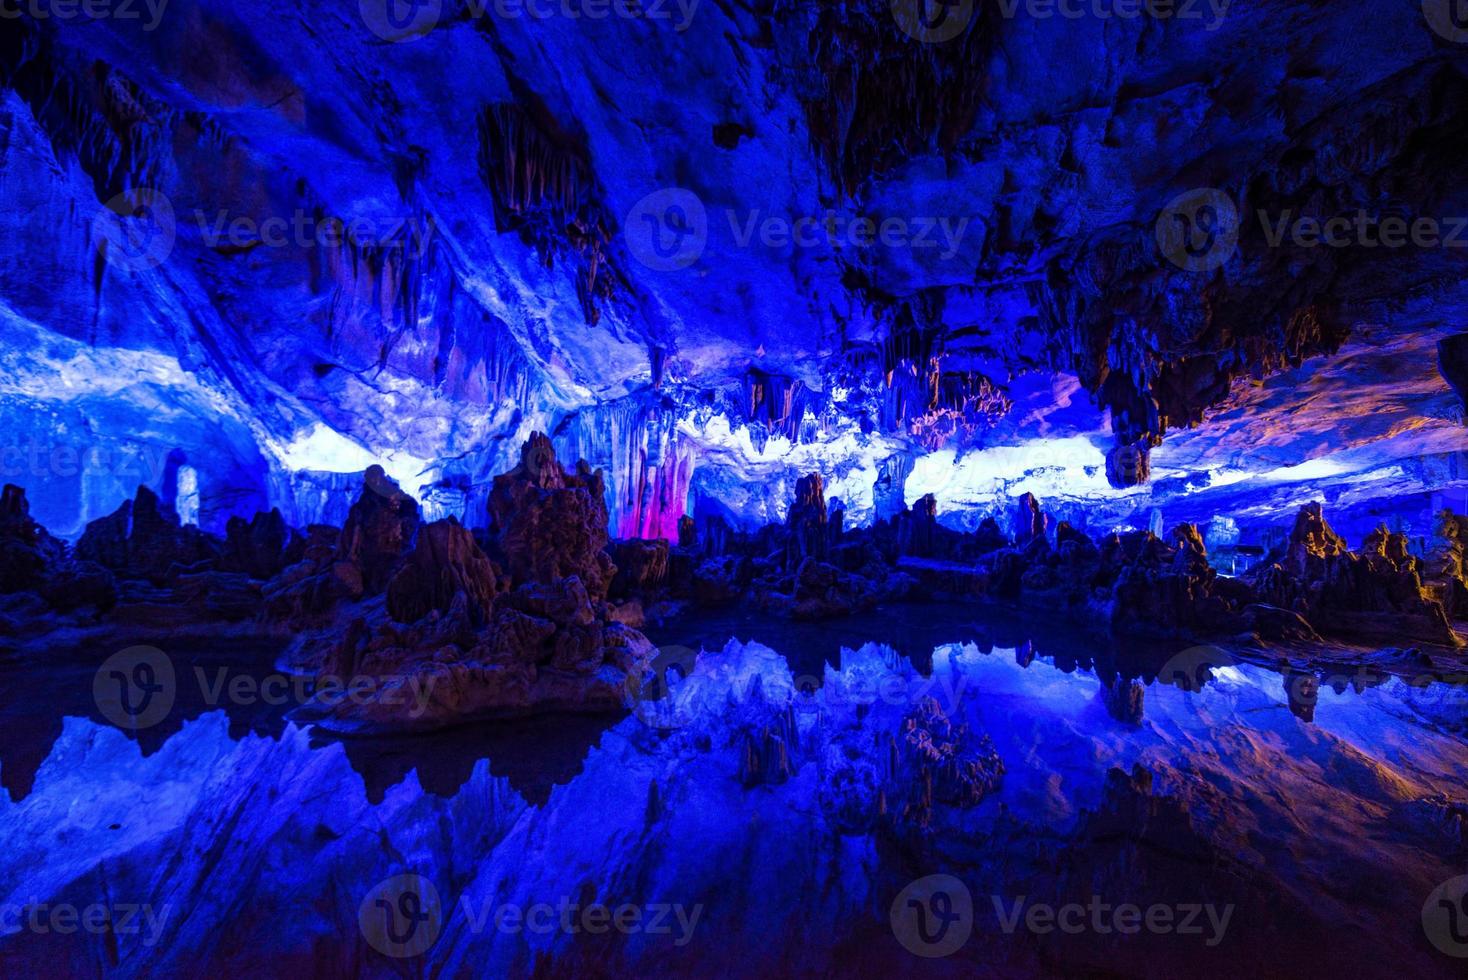 vass flöjt grotta på guilin, gunagxi, Kina foto